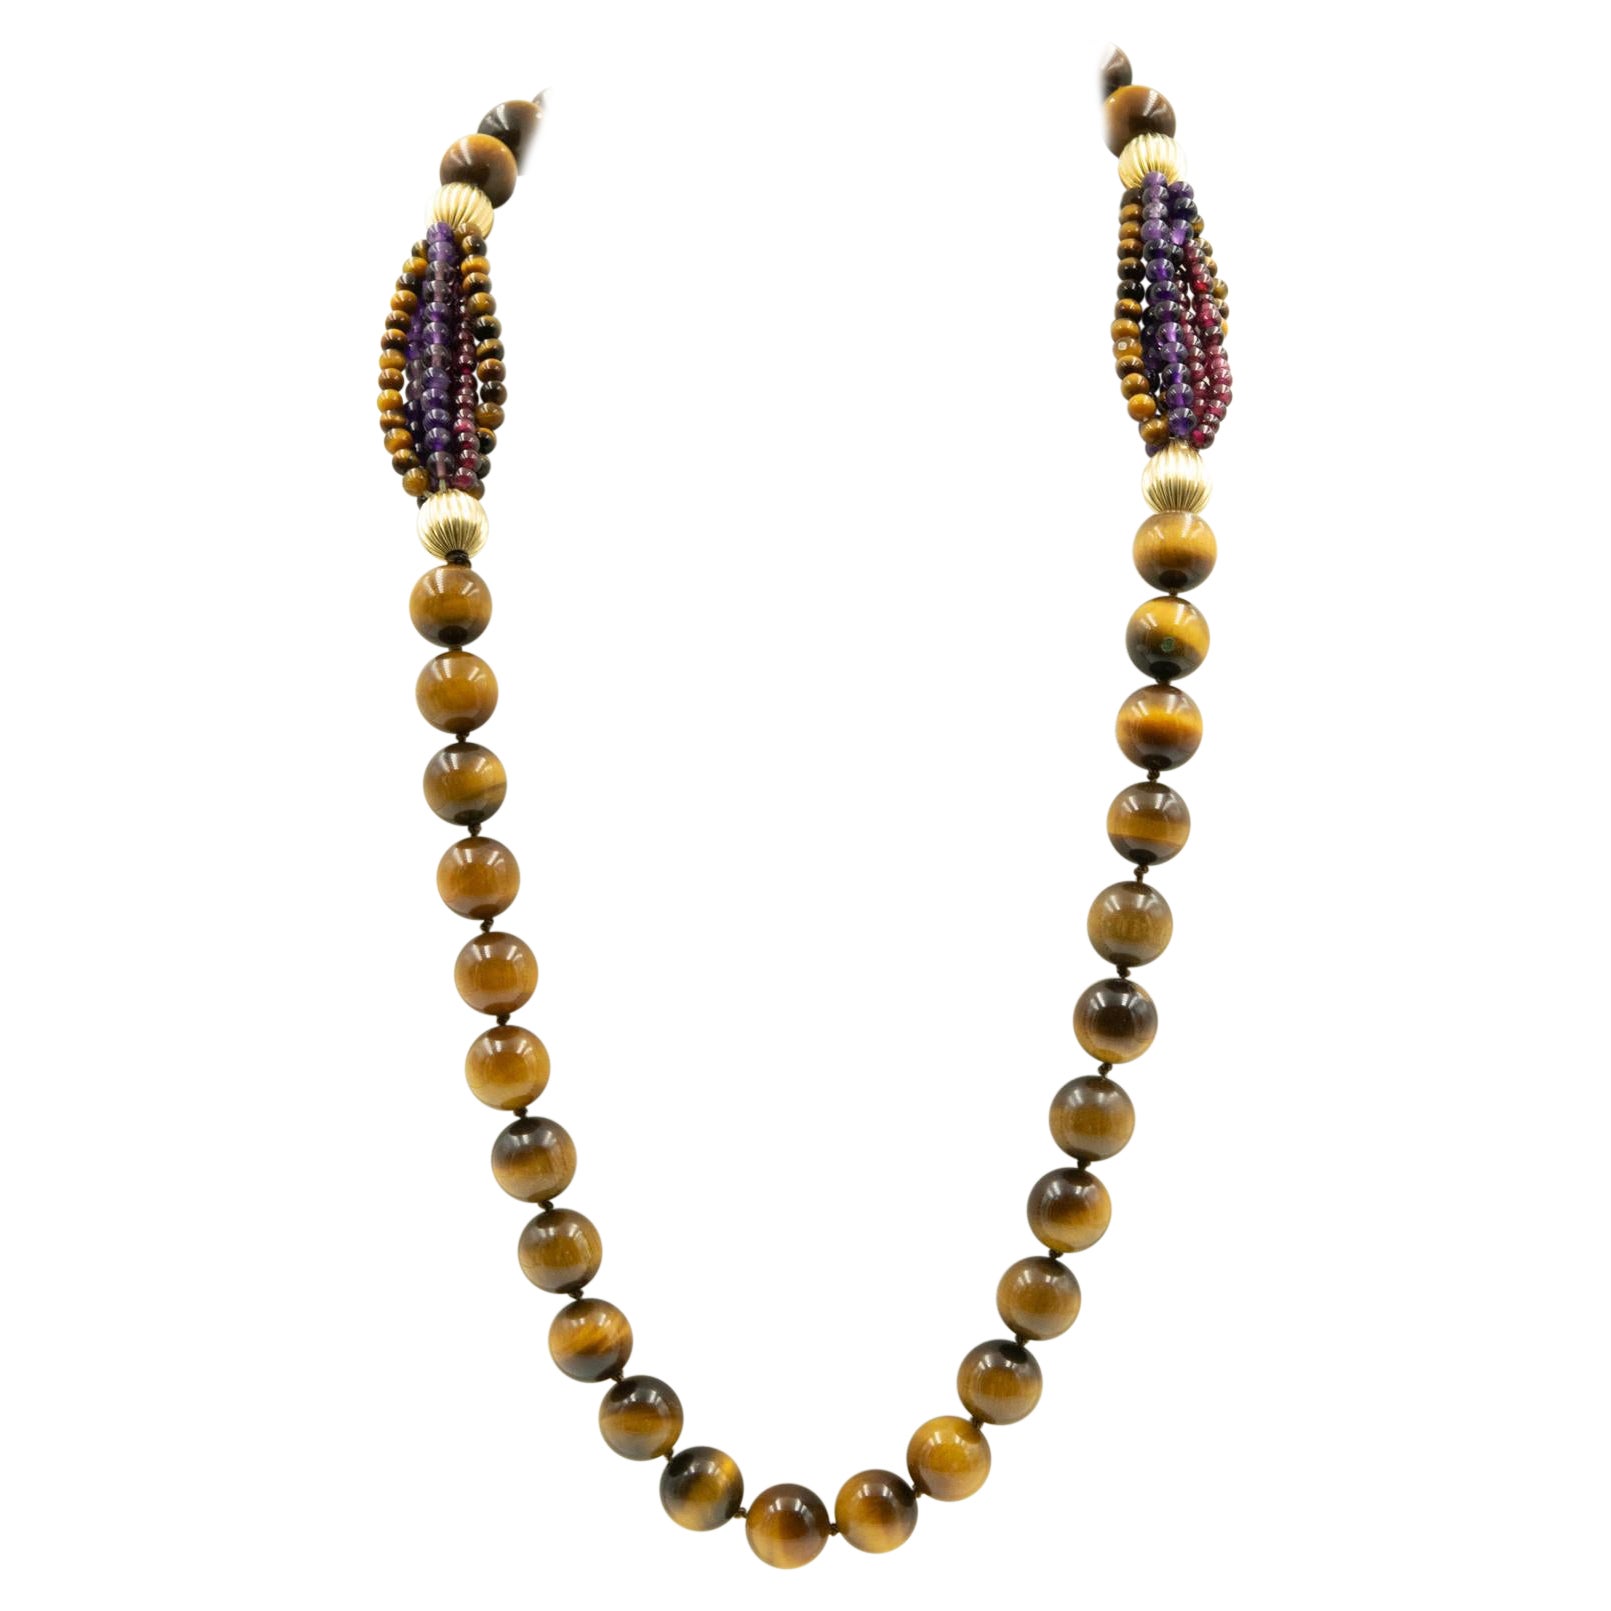 Long collier de perles d'améthyste et de grenat en forme d'œil de tigre avec perles nervurées remplies d'or